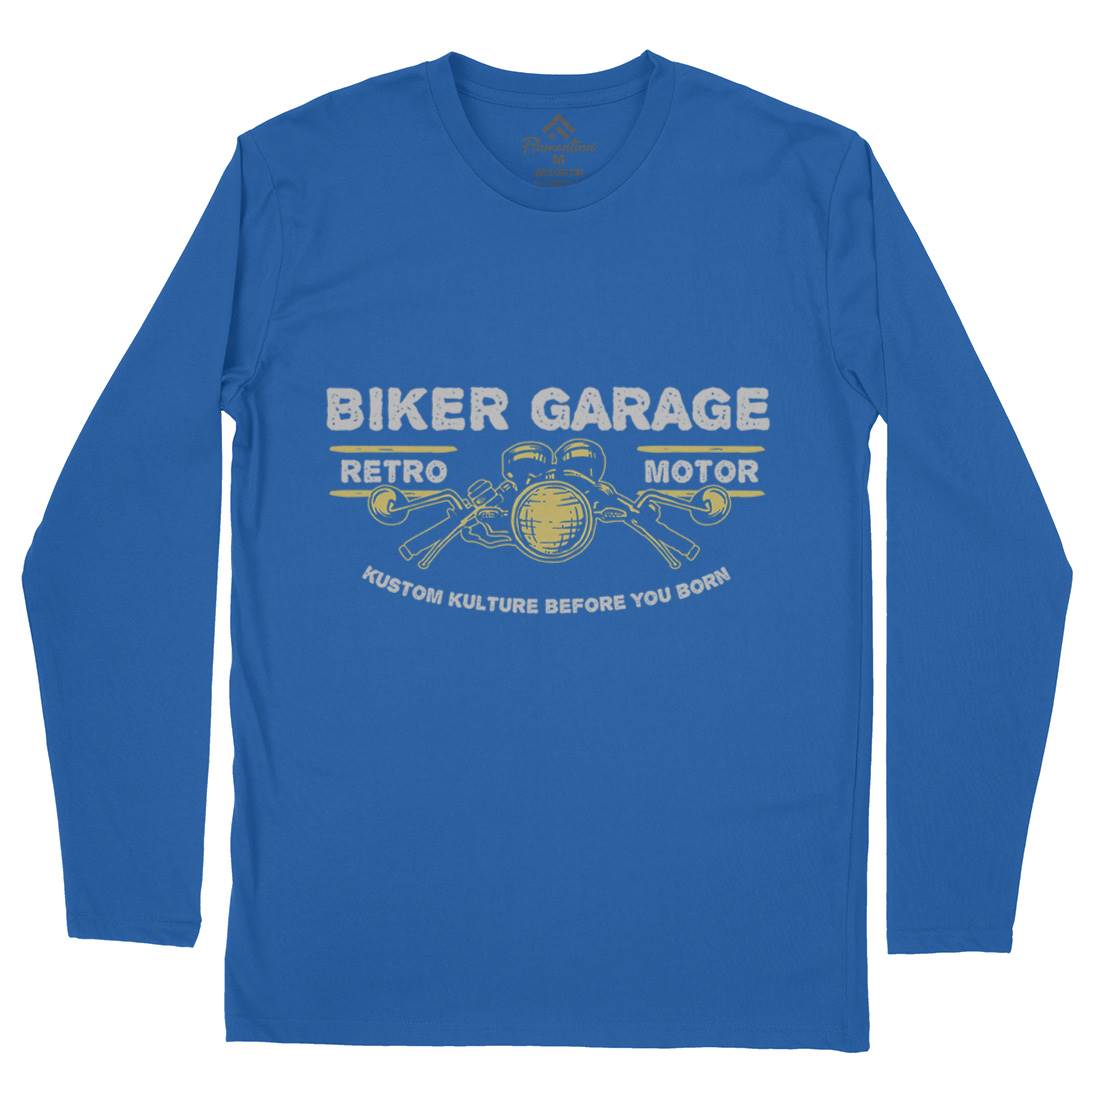 Biker Garage Mens Long Sleeve T-Shirt Motorcycles A303